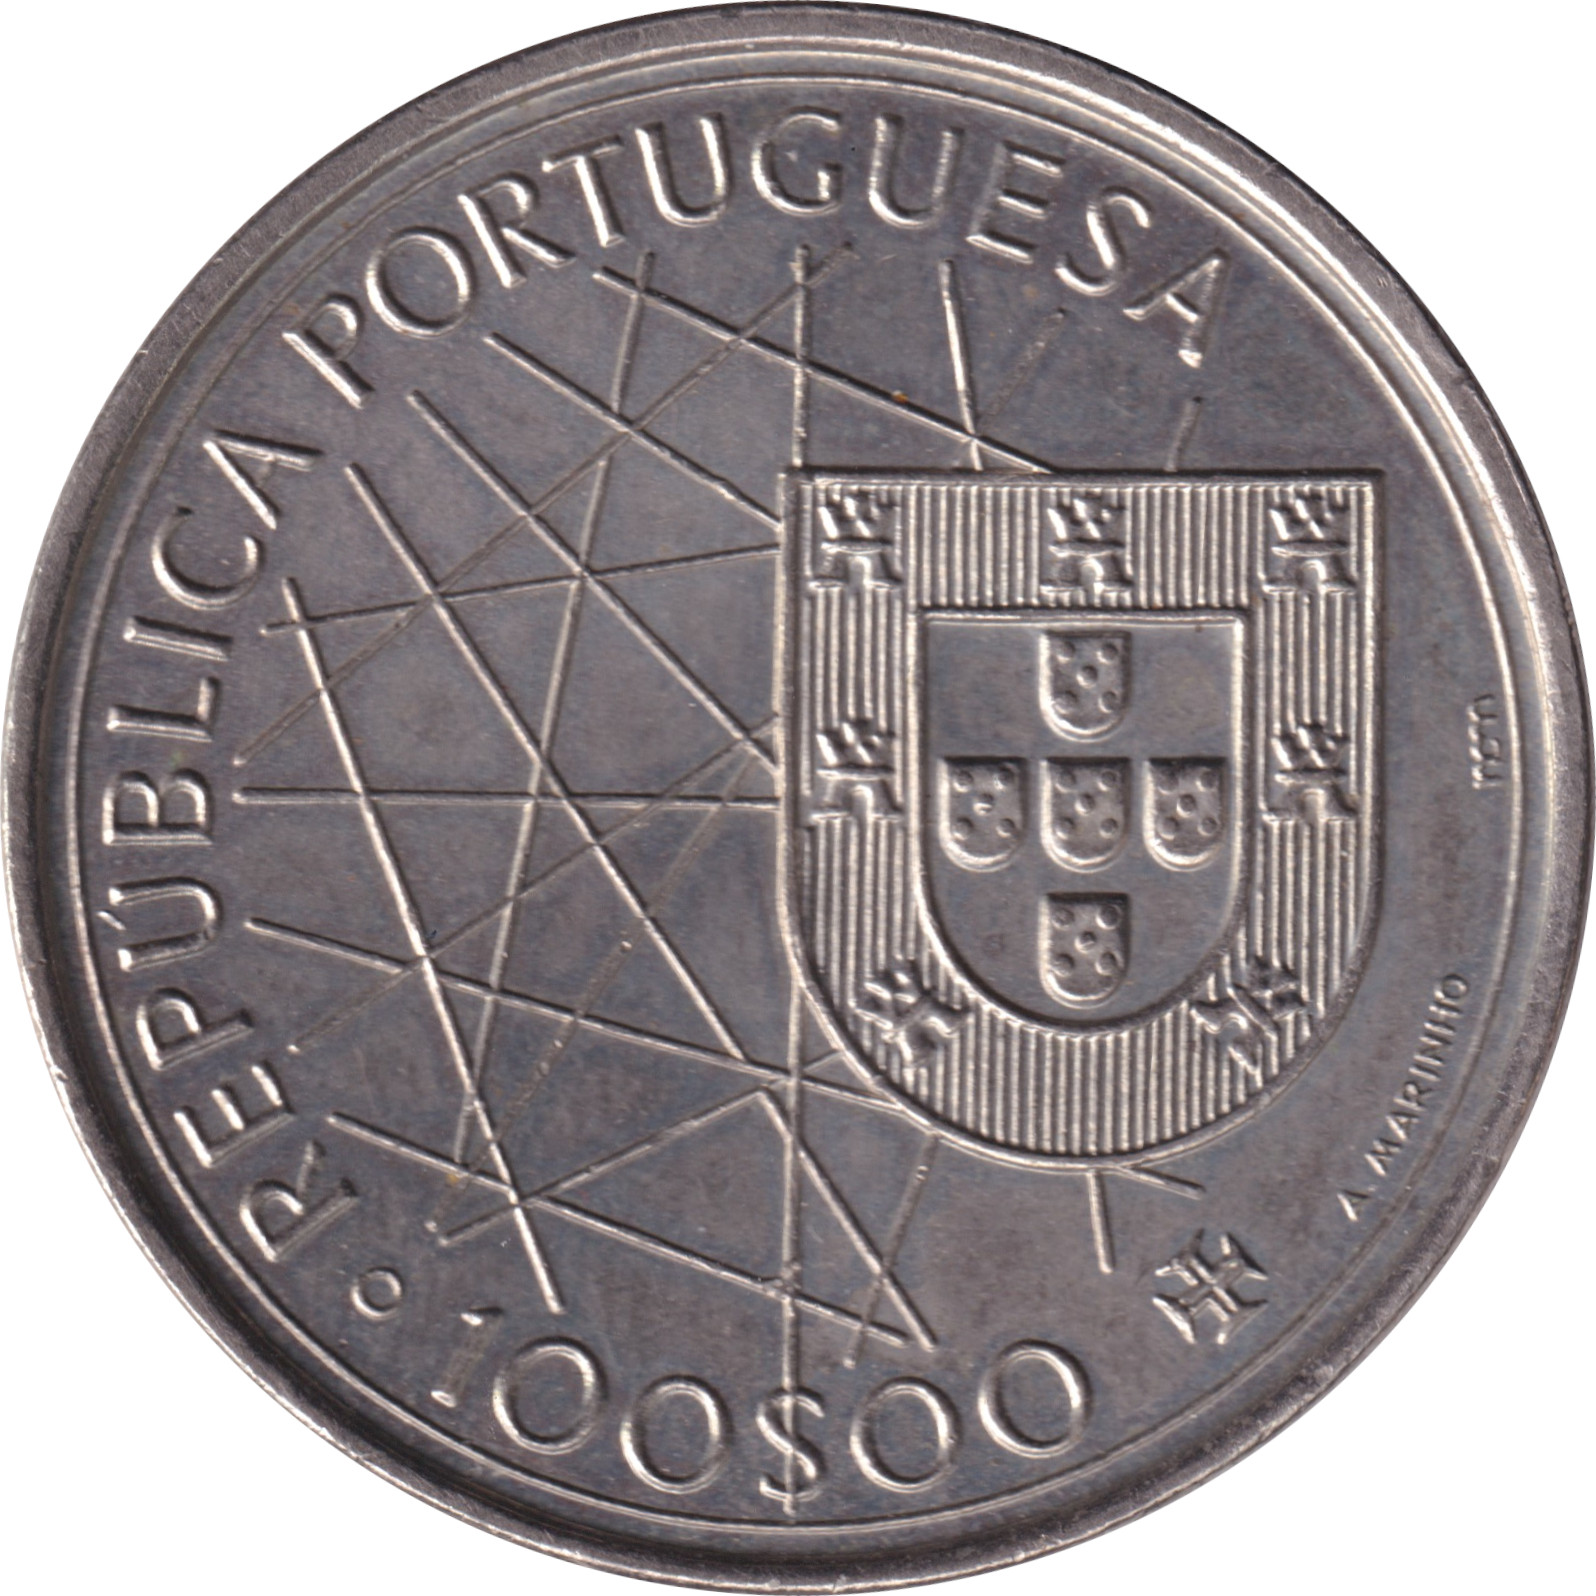 100 escudos - Découverte des Açores